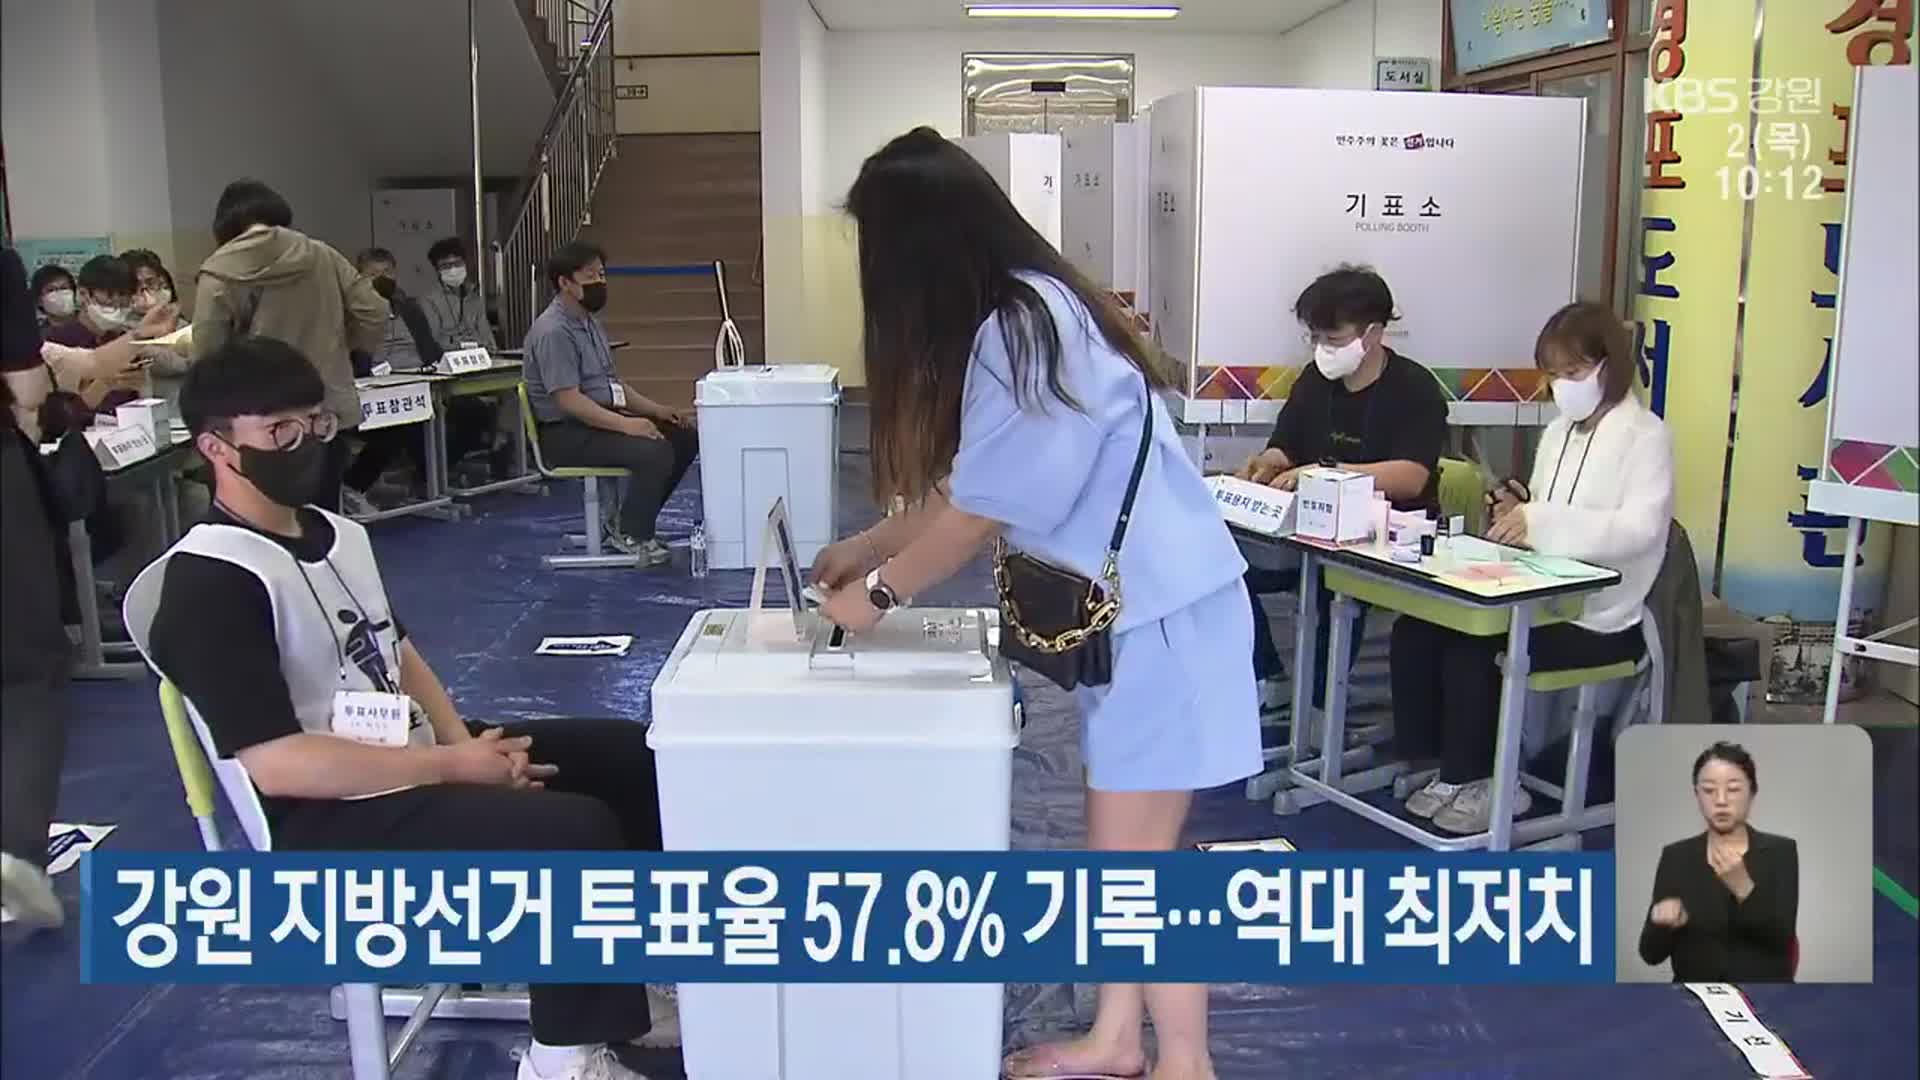 강원 지방선거 투표율 57.8% 기록…역대 최저치